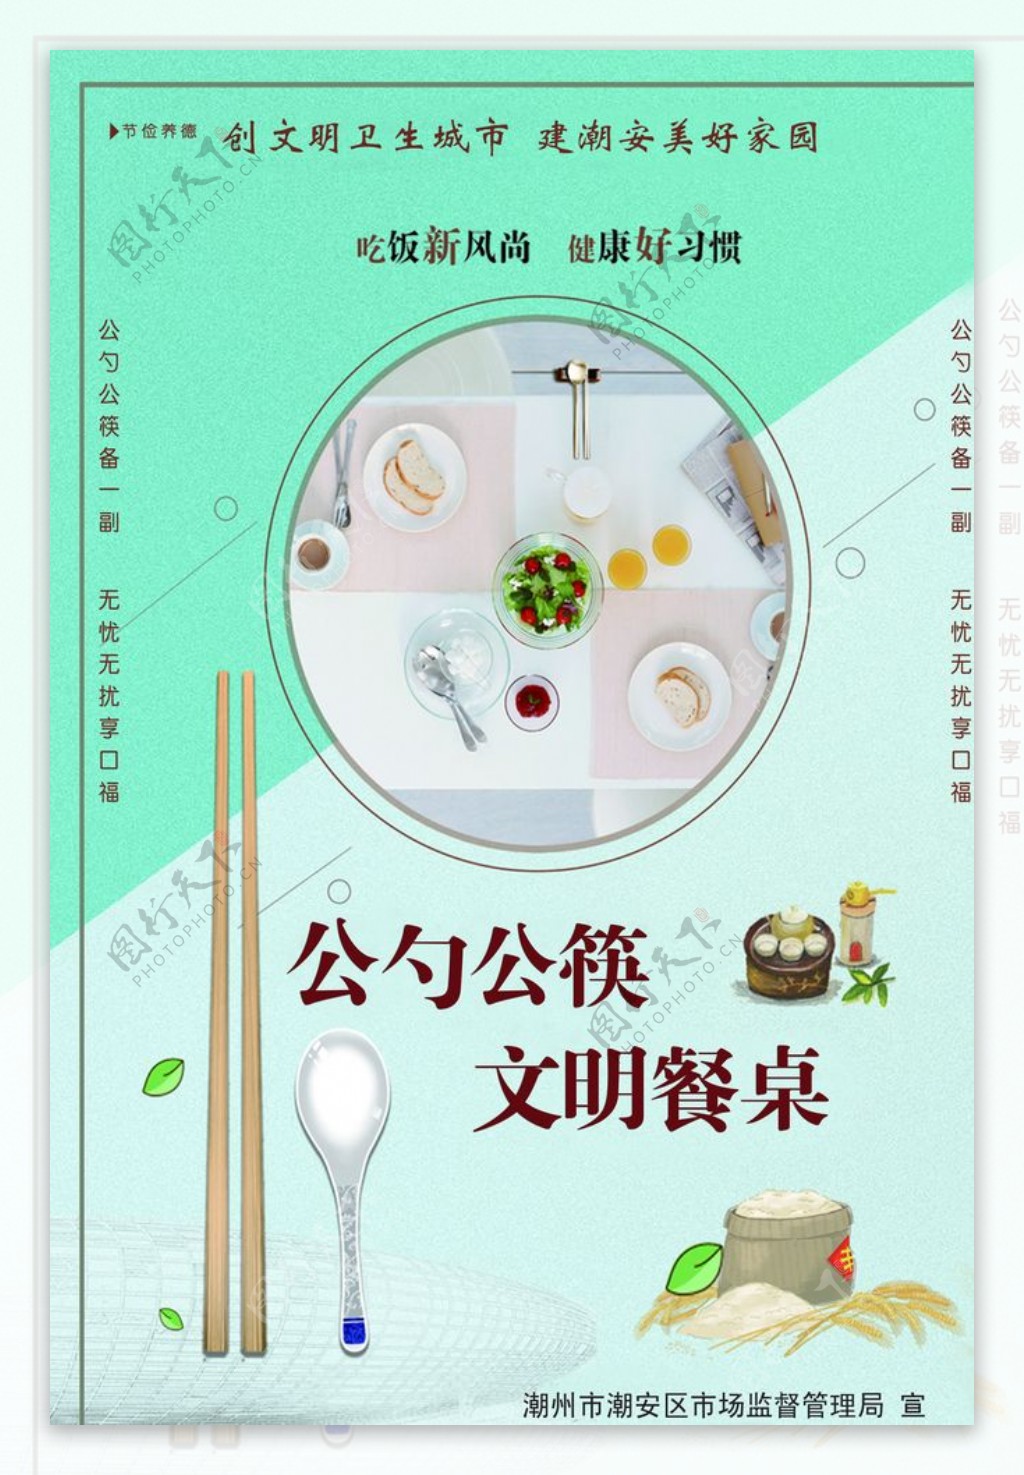 公筷公勺文明餐桌图片